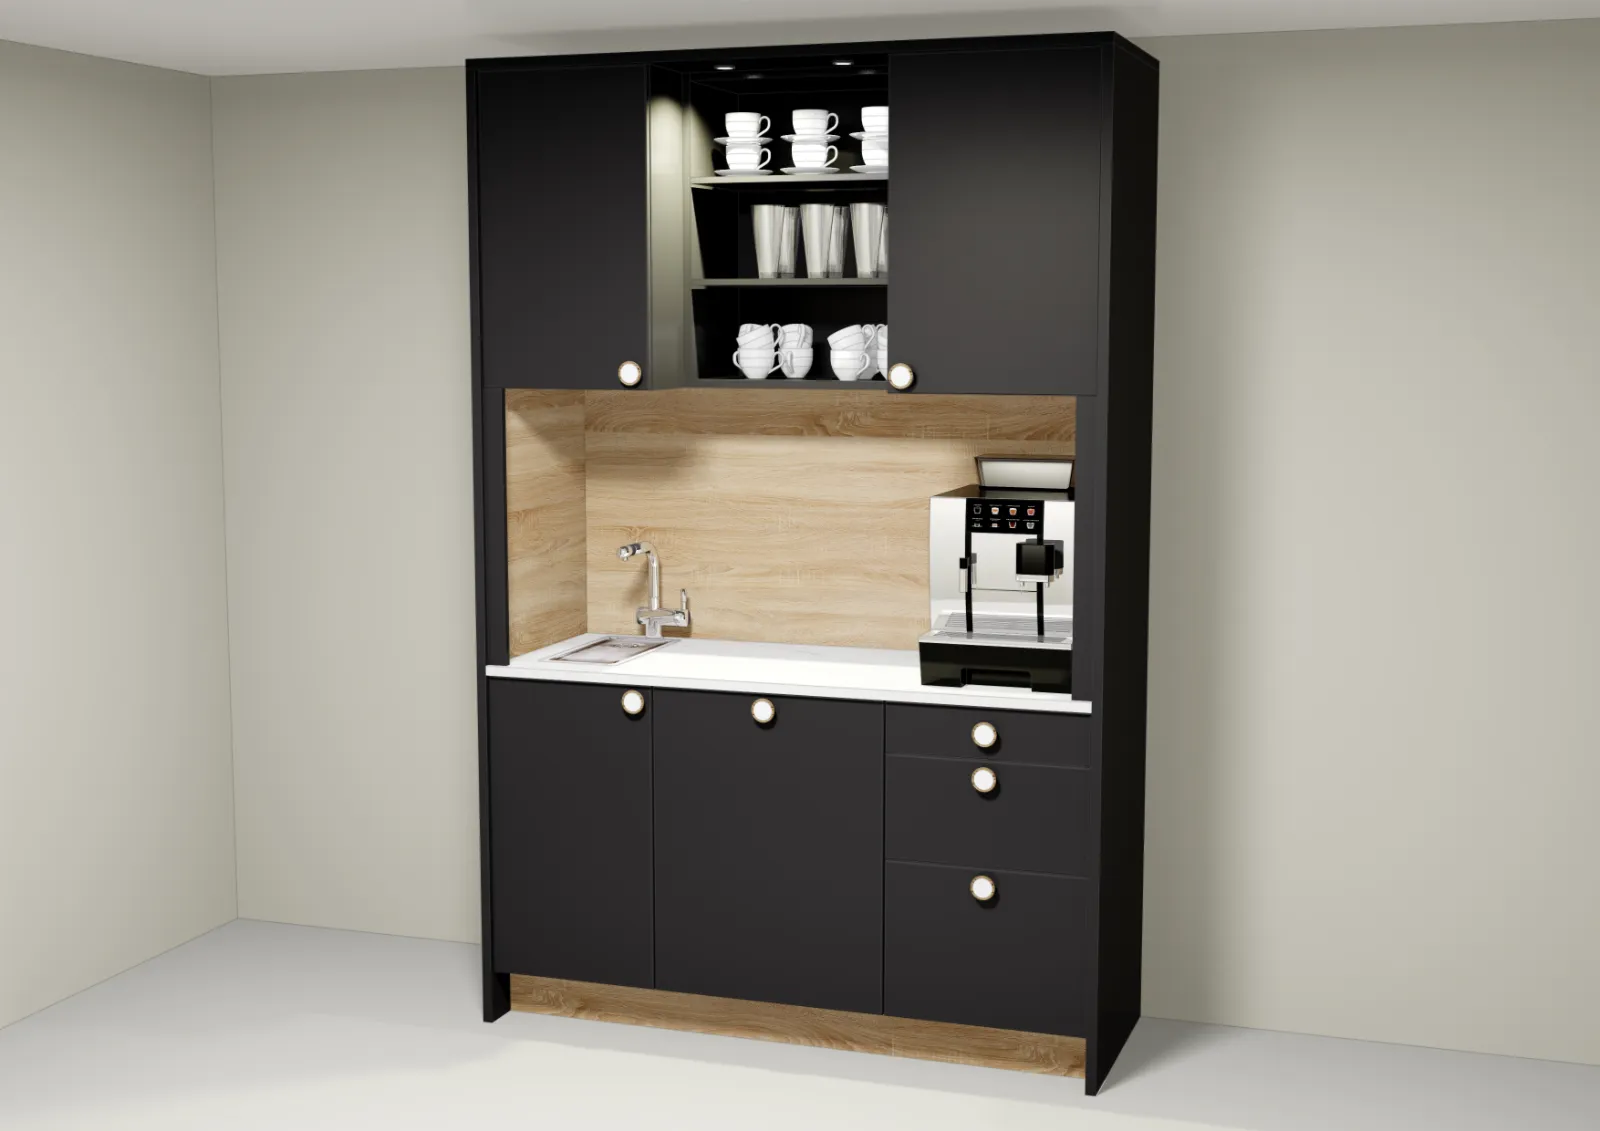 Een zwart-witte keuken met spoelbak en koffiezetapparaat te huur op het werk of op kantoor (keuken huren, keuken kantoor).